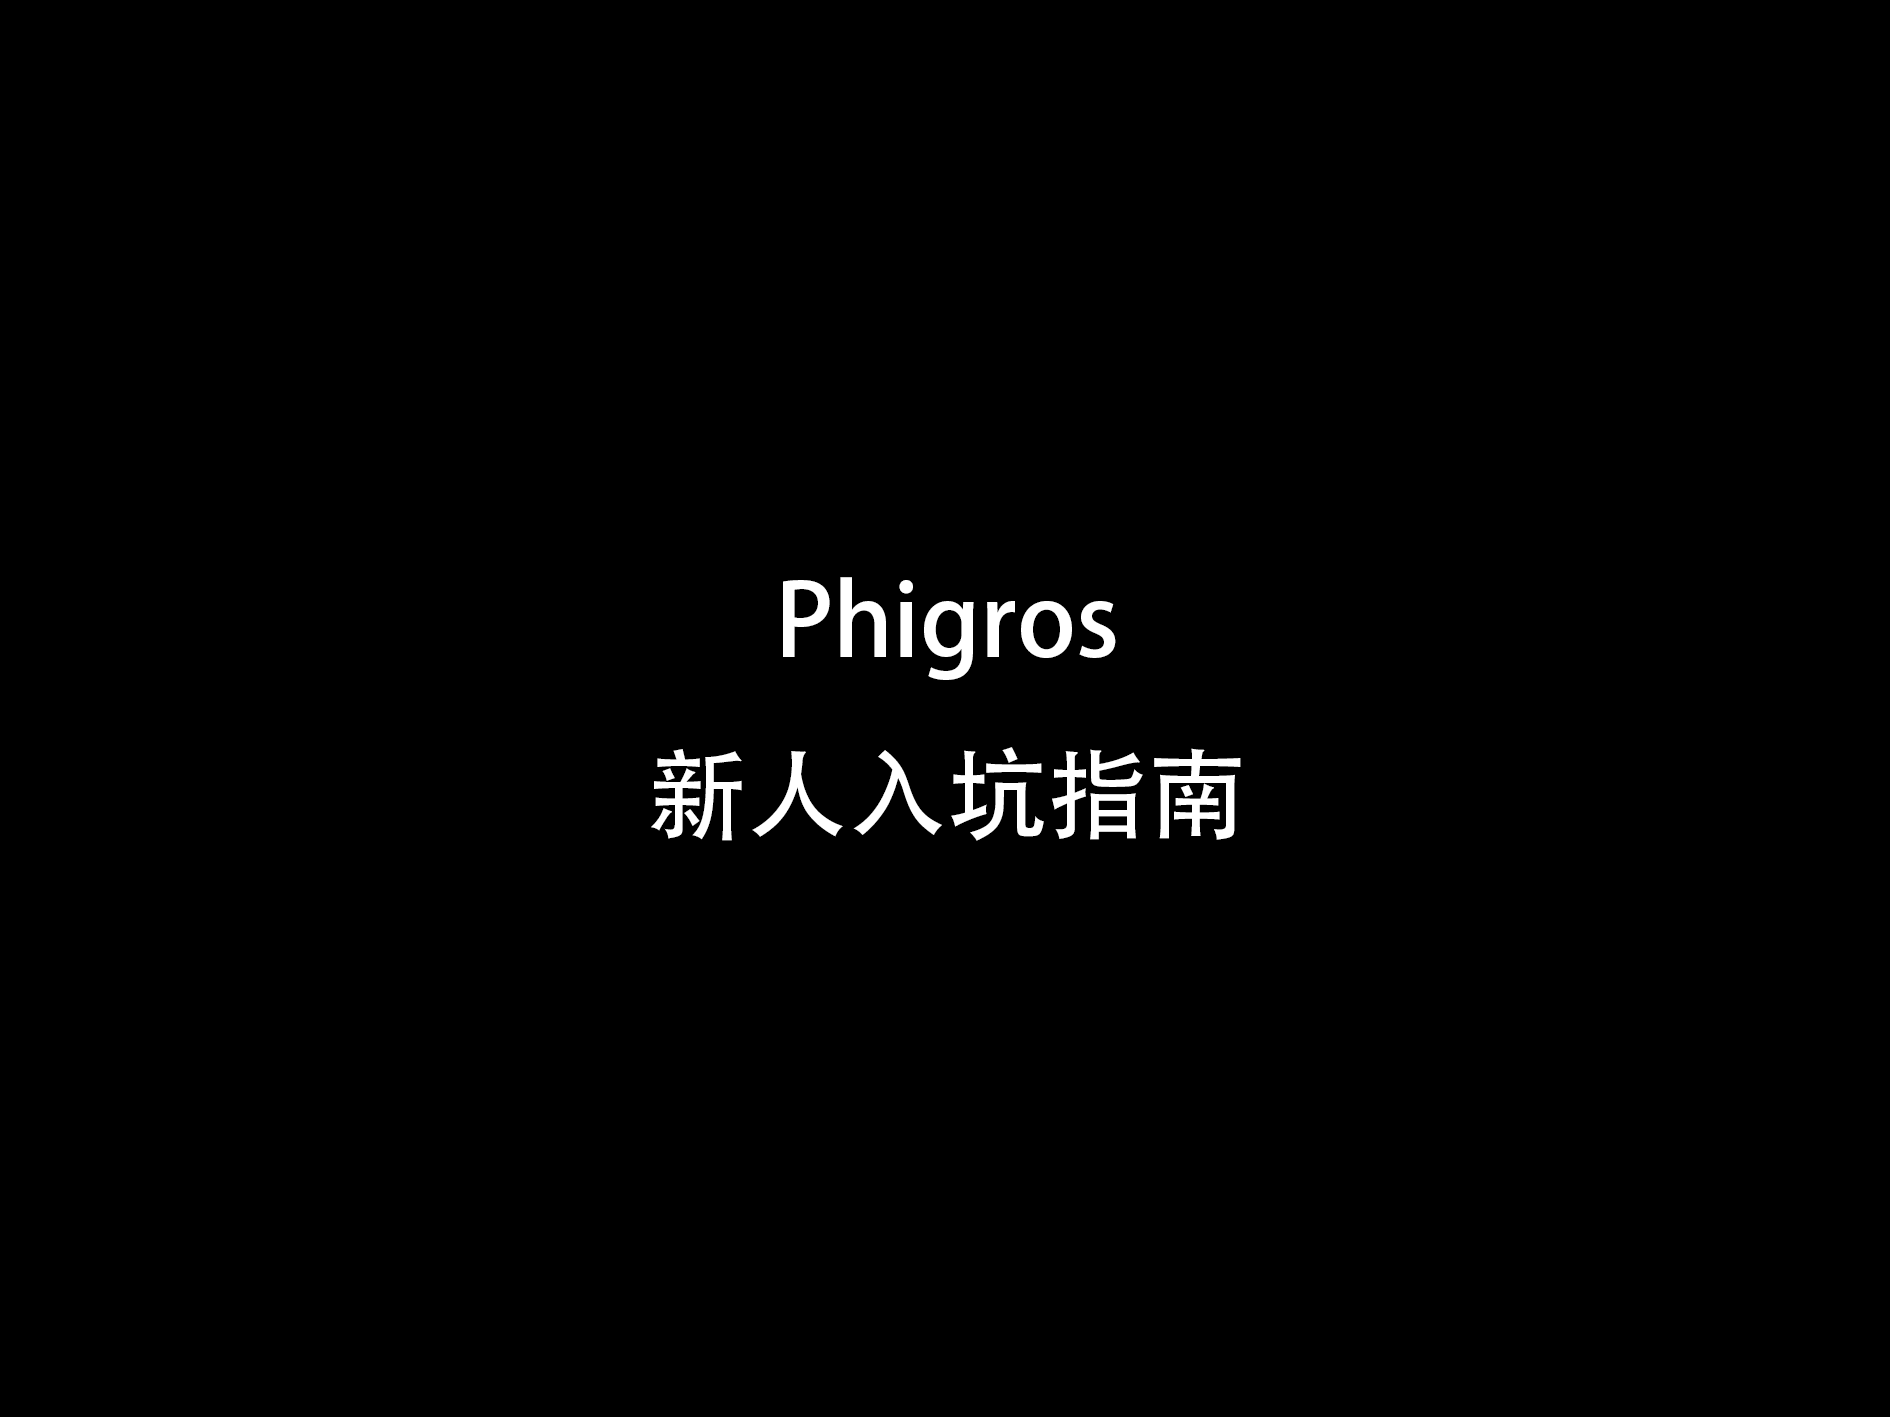 【新人看这里】Phigros新人入坑指南